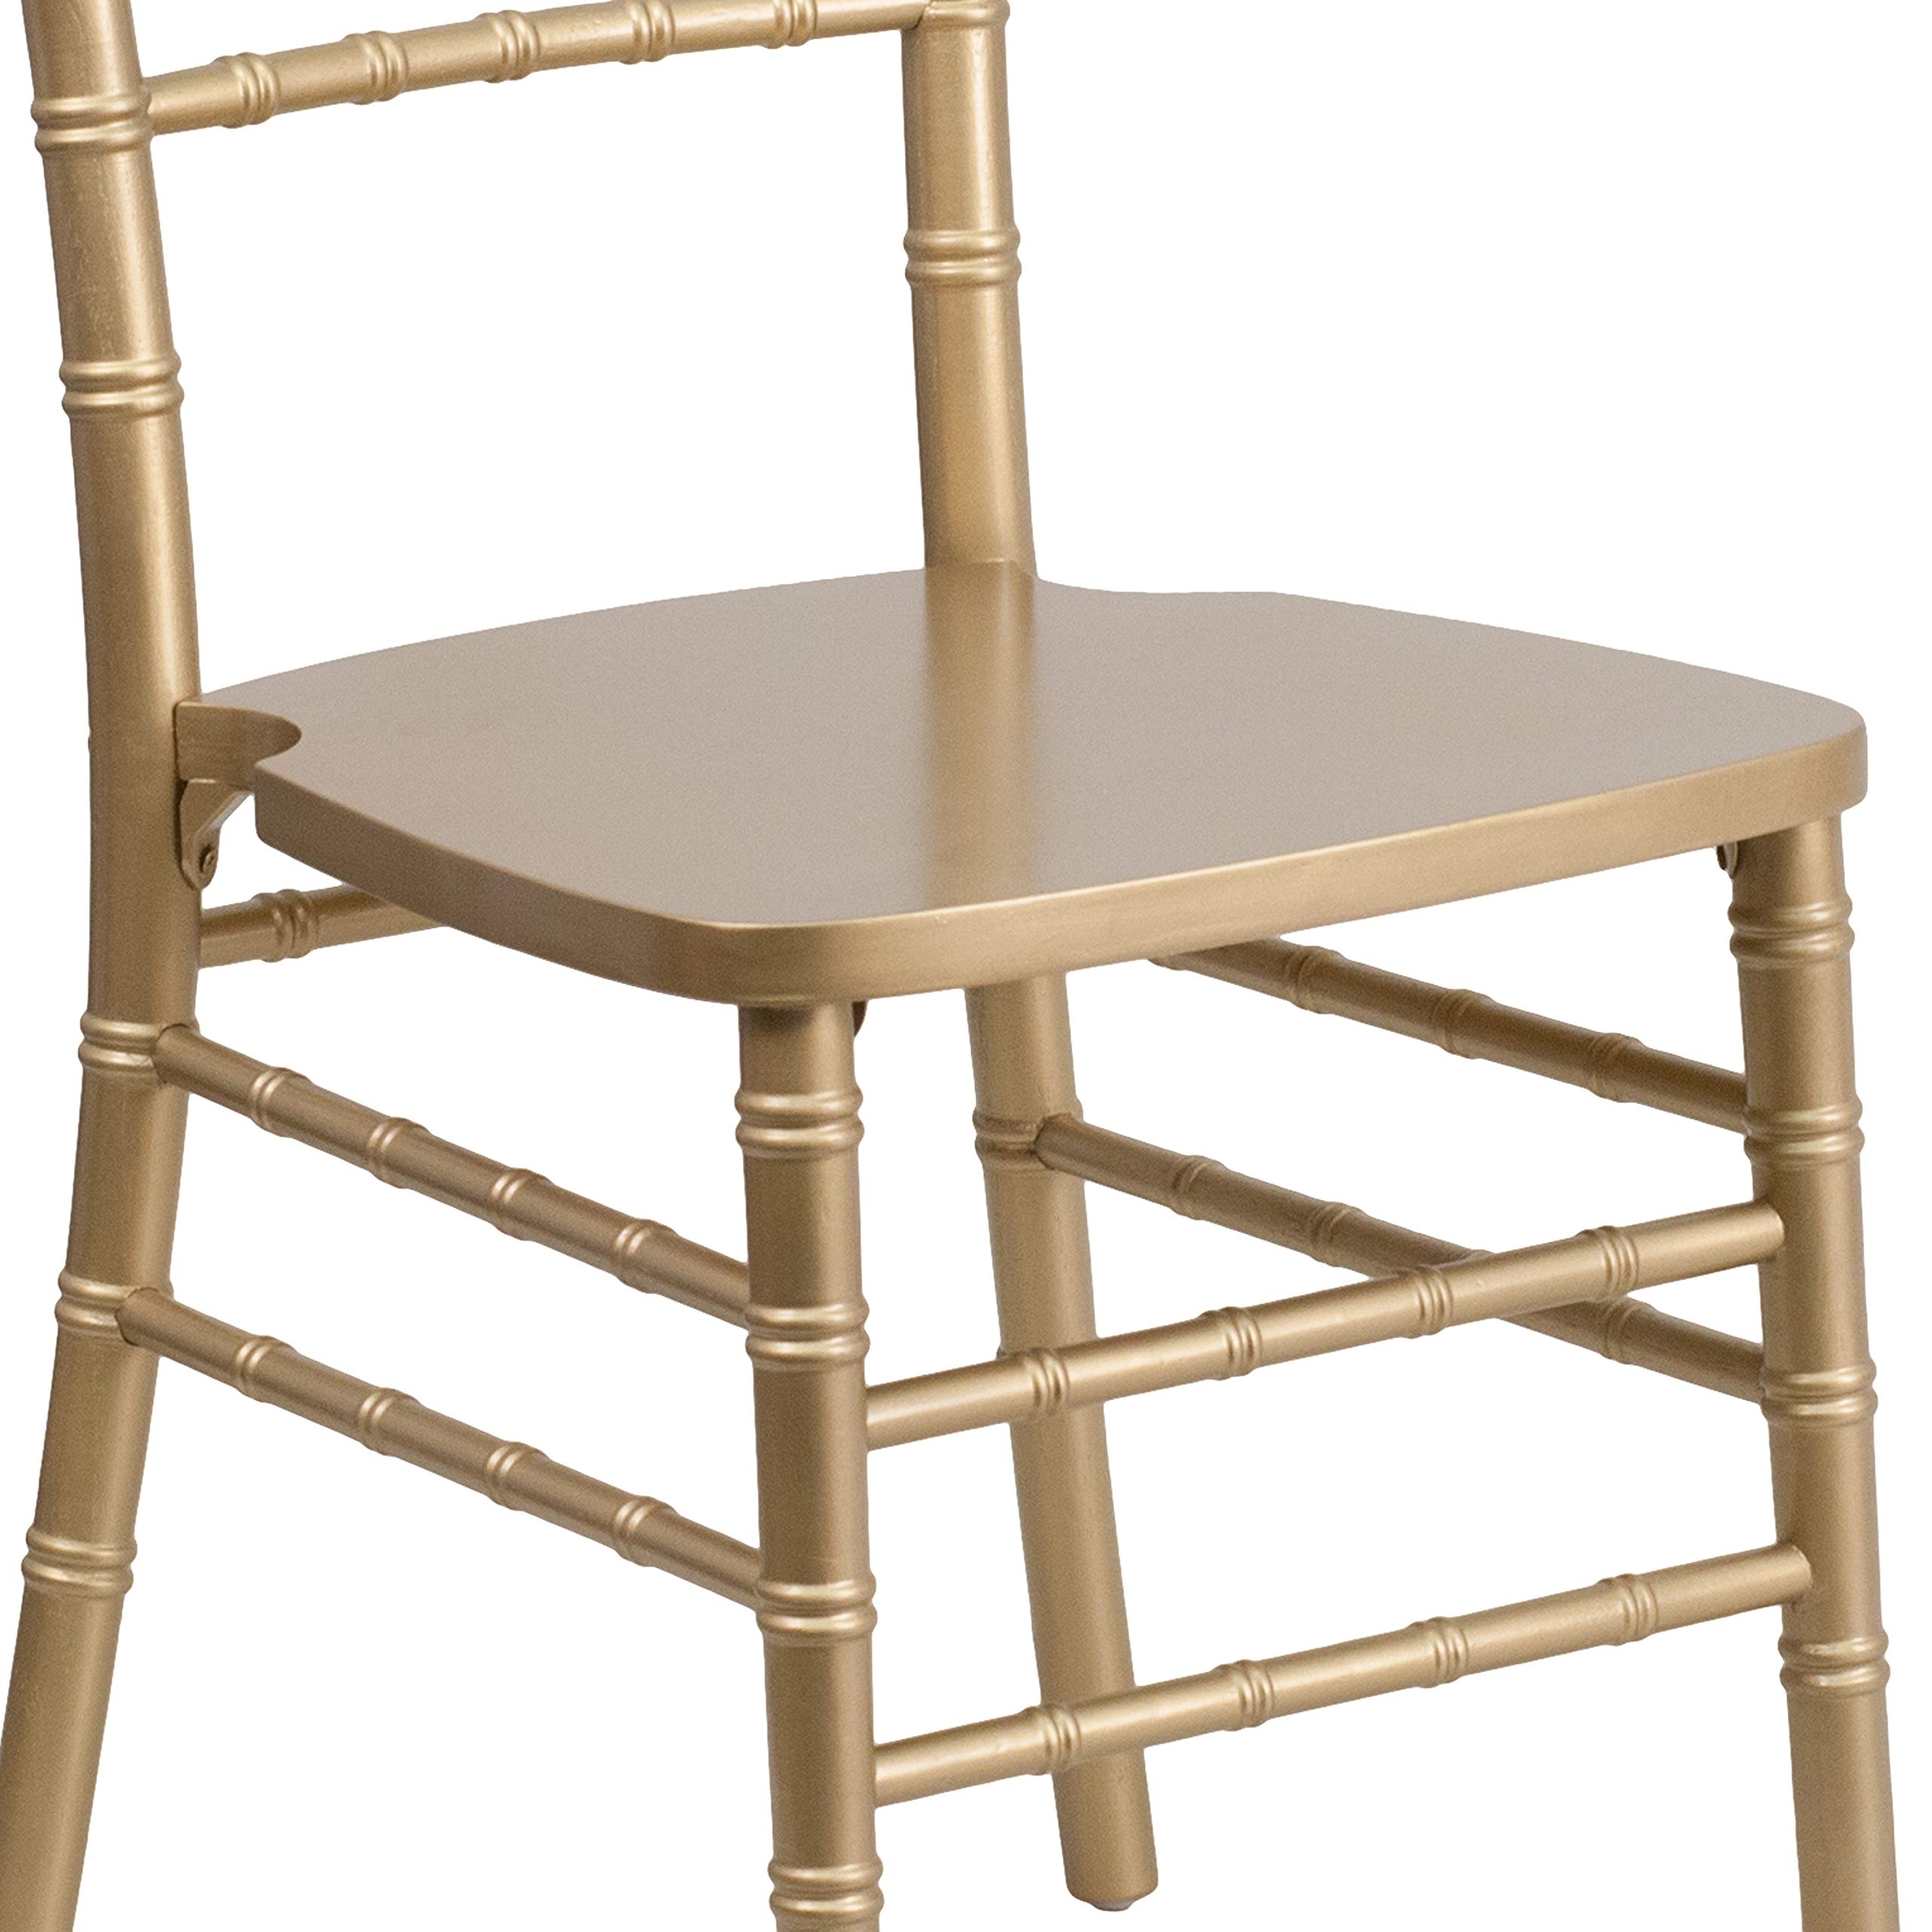 BizChair Gold Wood Chiavari Chair